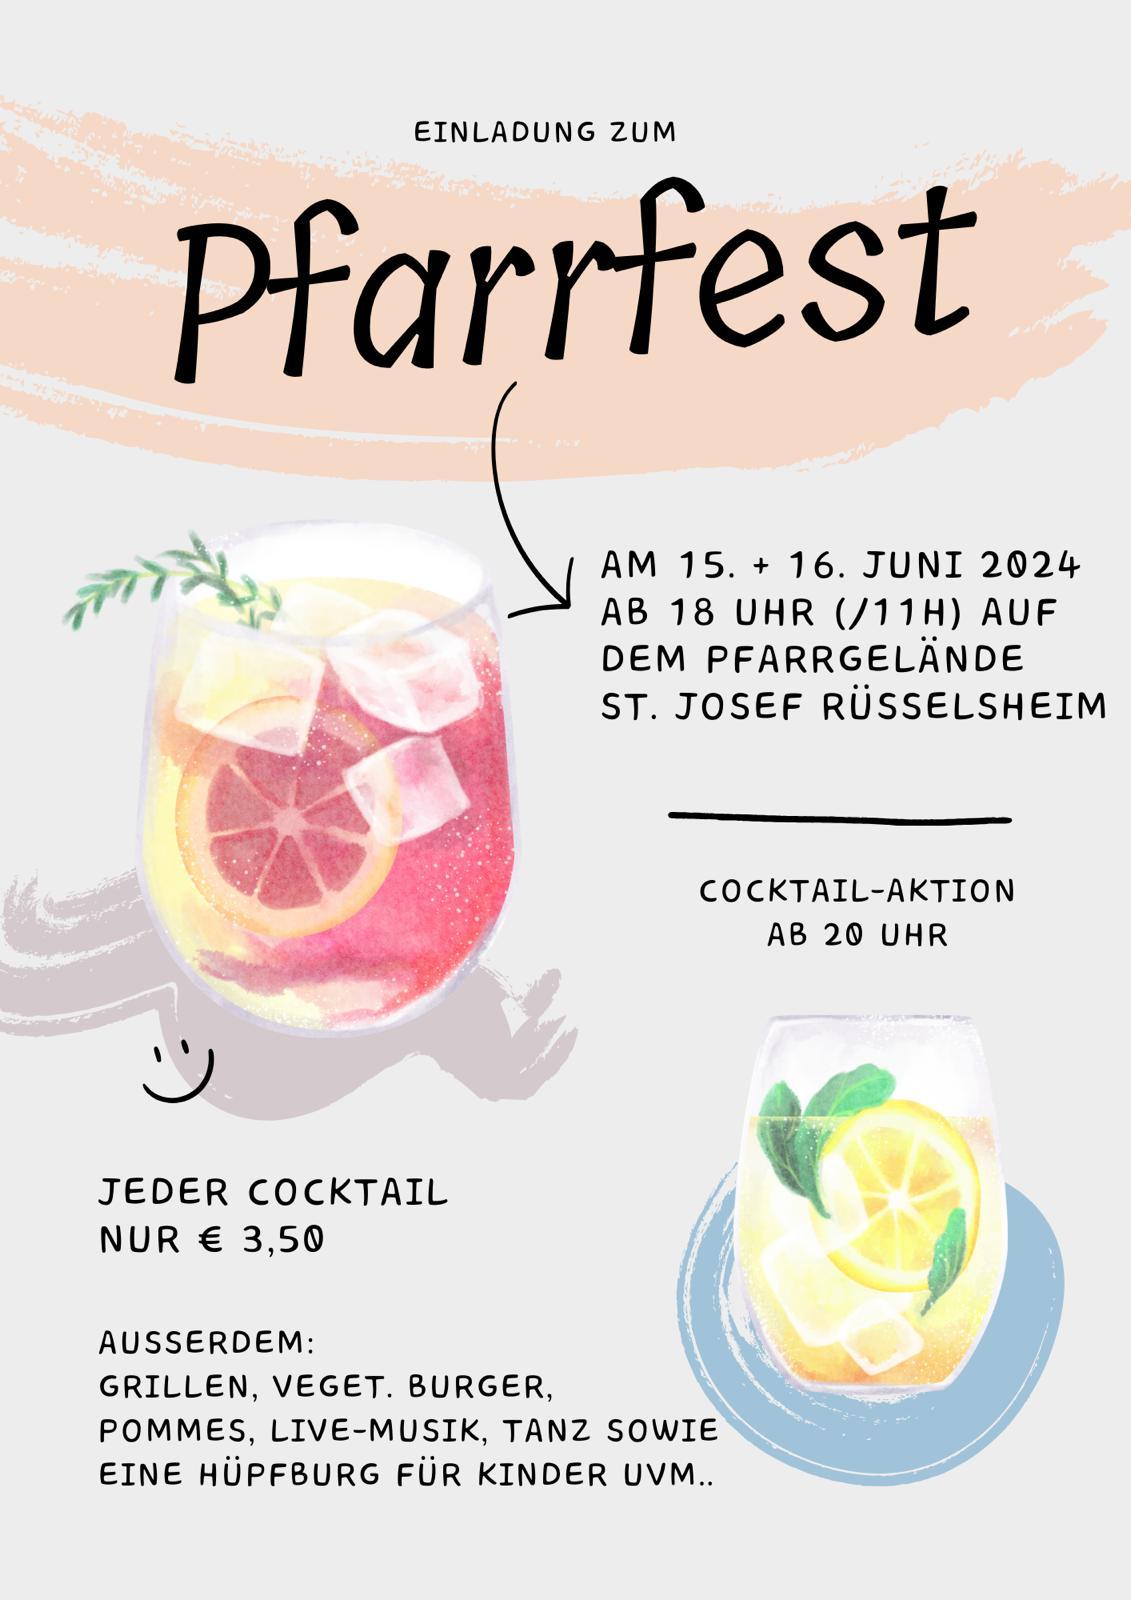 pfarrfest_cocktails (c) N Bauer